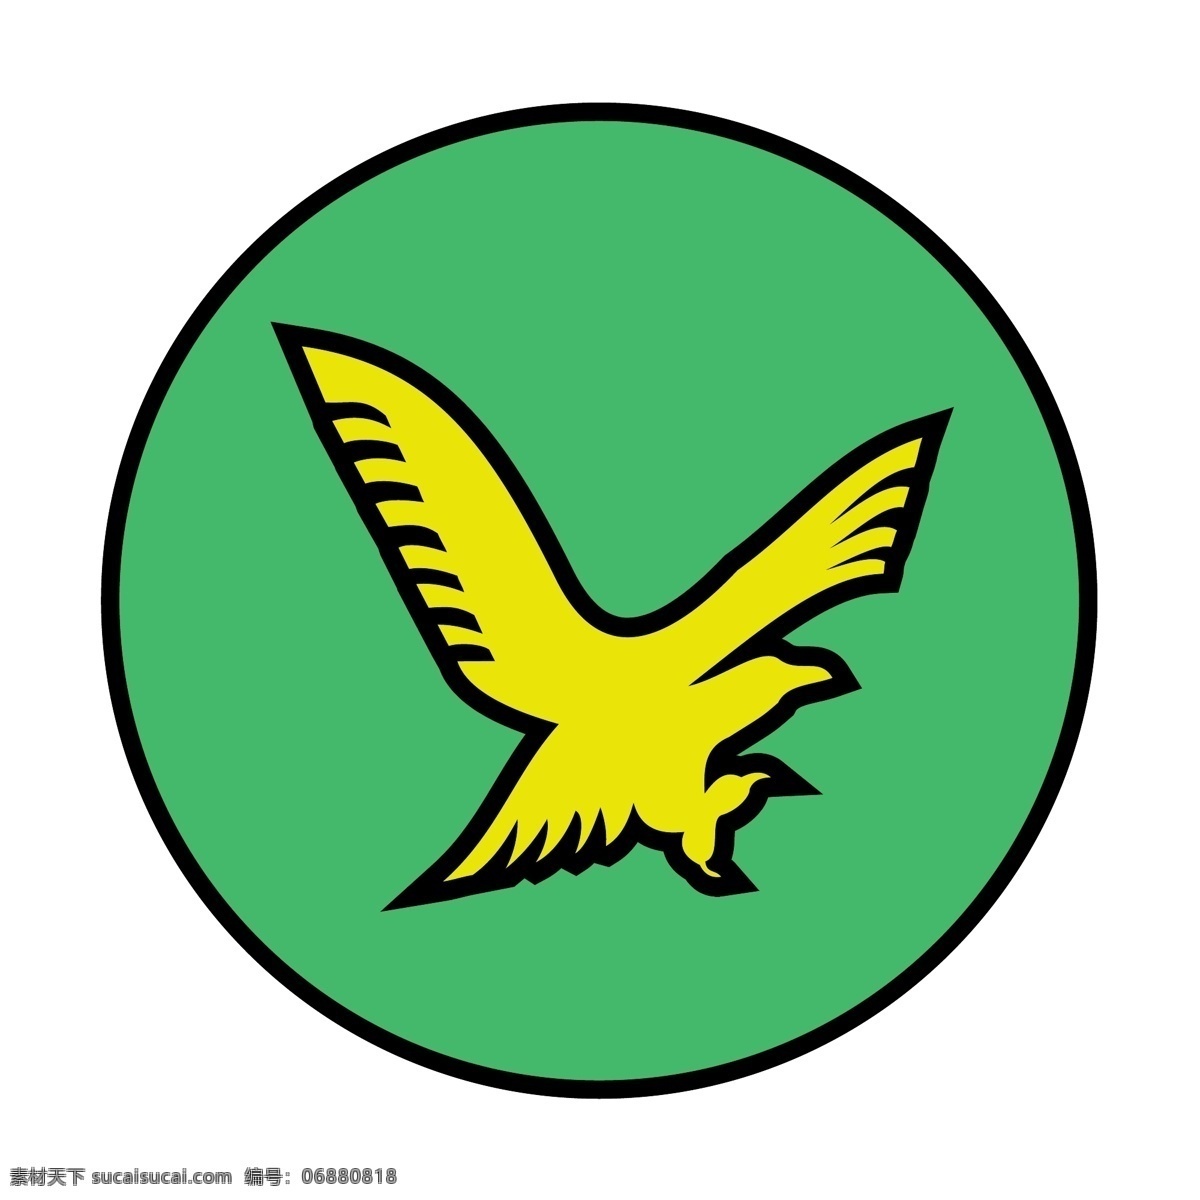 金鹰免费下载 游离金鹰标志 金鹰 标志 psd源文件 logo设计